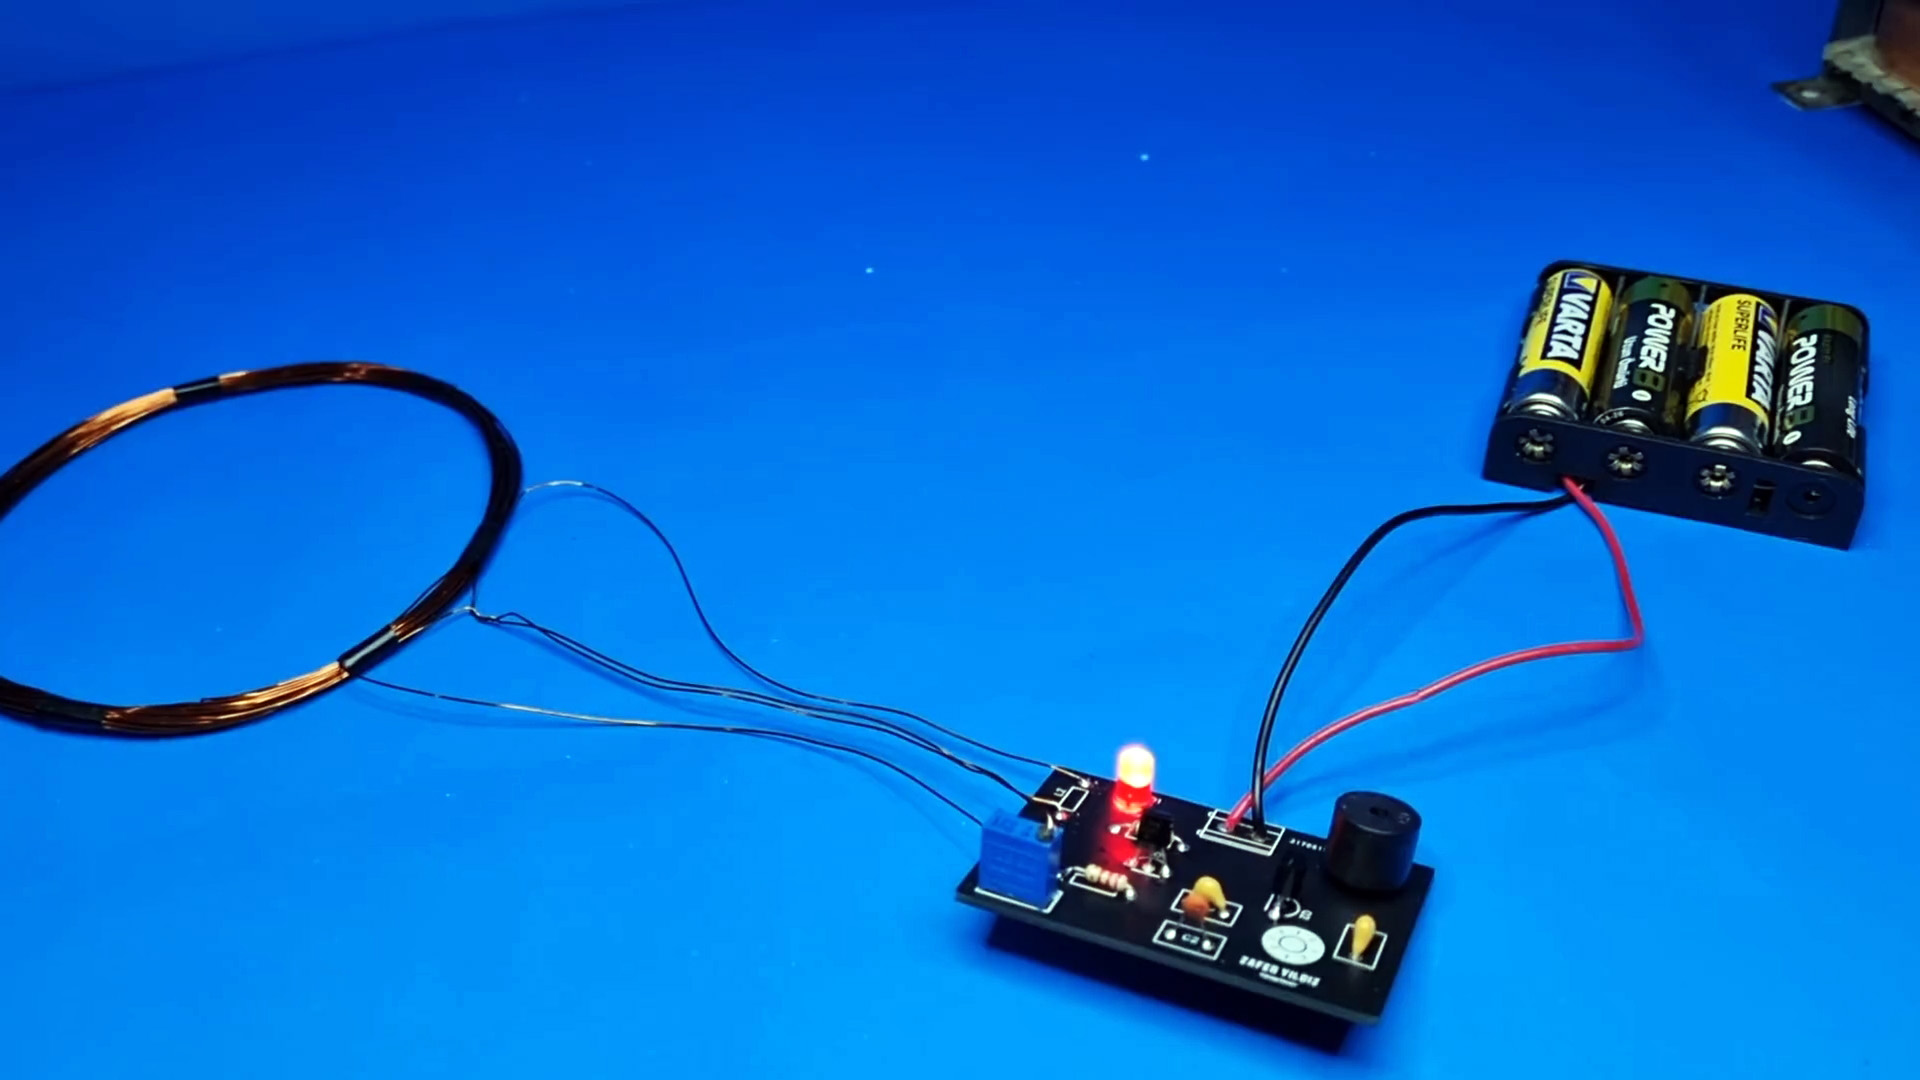 Как сделать простой и чувствительный металлоискатель на 2 транзисторах с элементарной настройкой